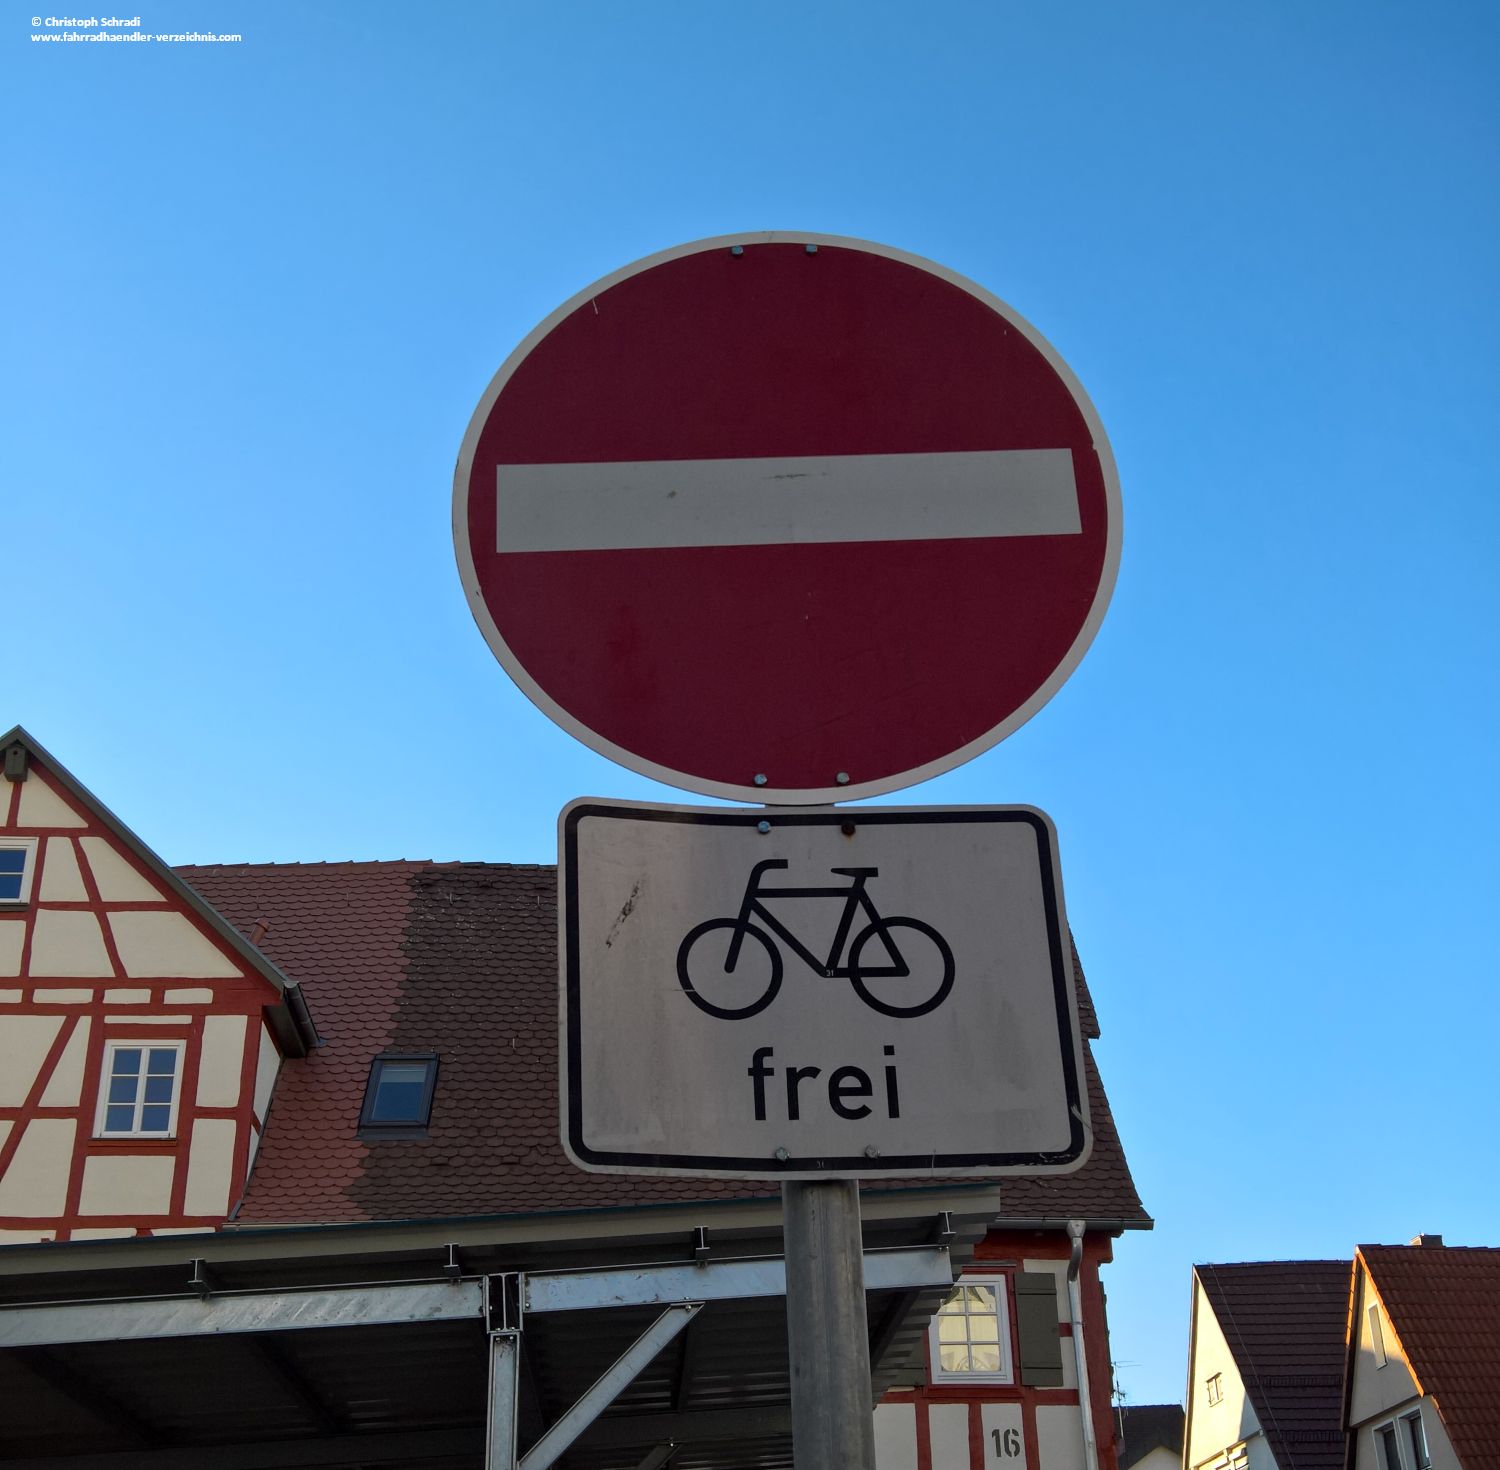 Ist an einem Durchfahrtsverbotsschild an einer Einbahnstraße ein "Fahrrad frei" Zusatzzeichen, so können Fahrradfahrer diese auch entgegen der Fahrtrichtung befahren